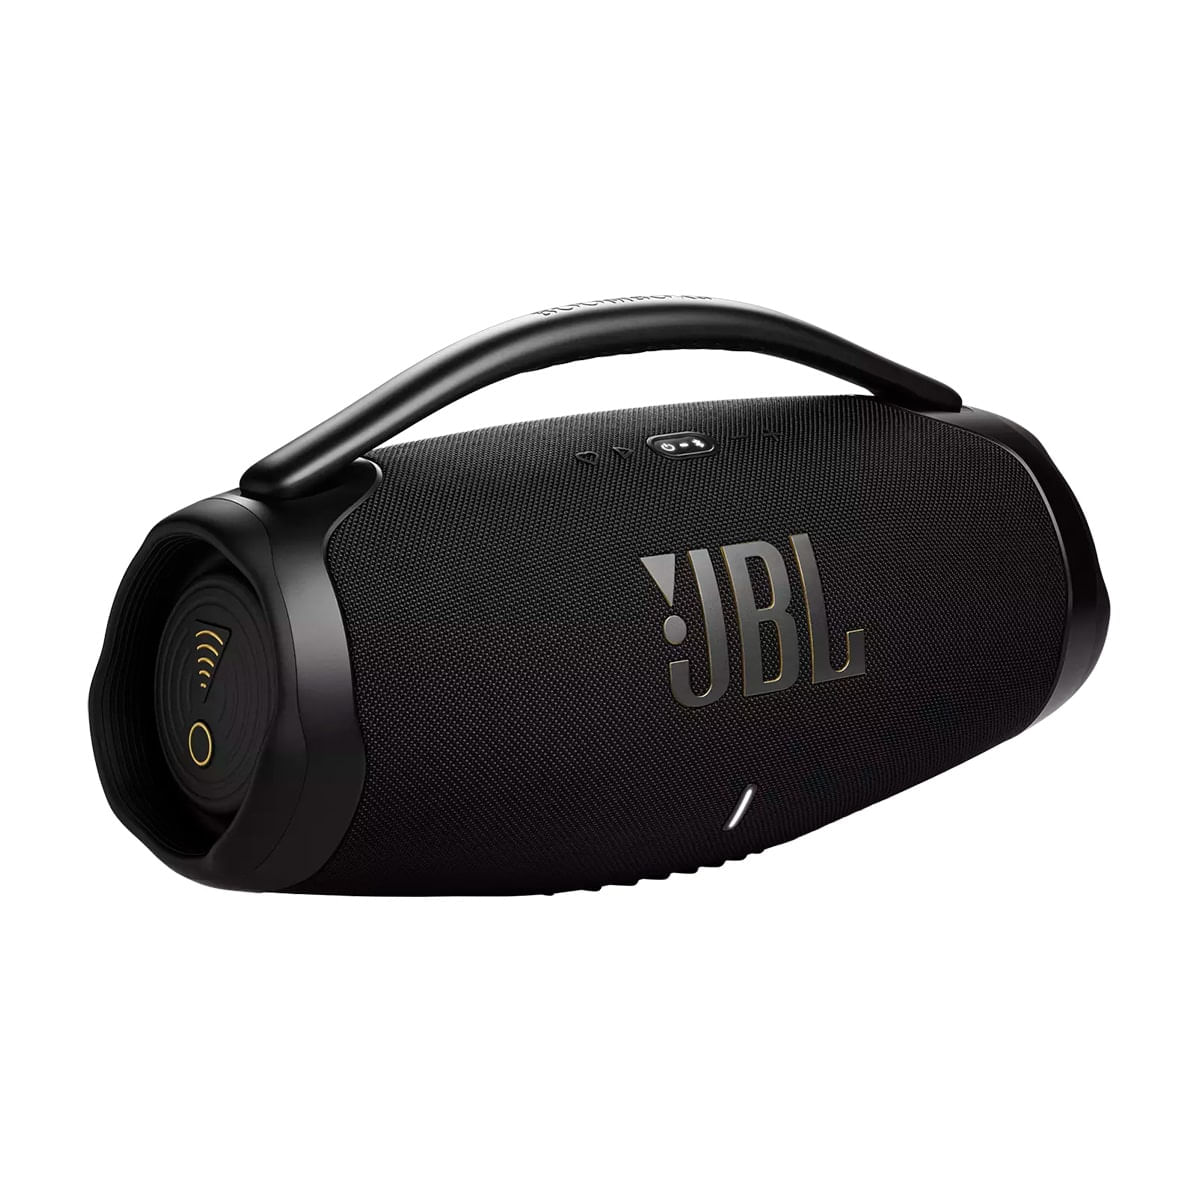 Caixa de som para PC: confira os benefícios e o modelo JBL!